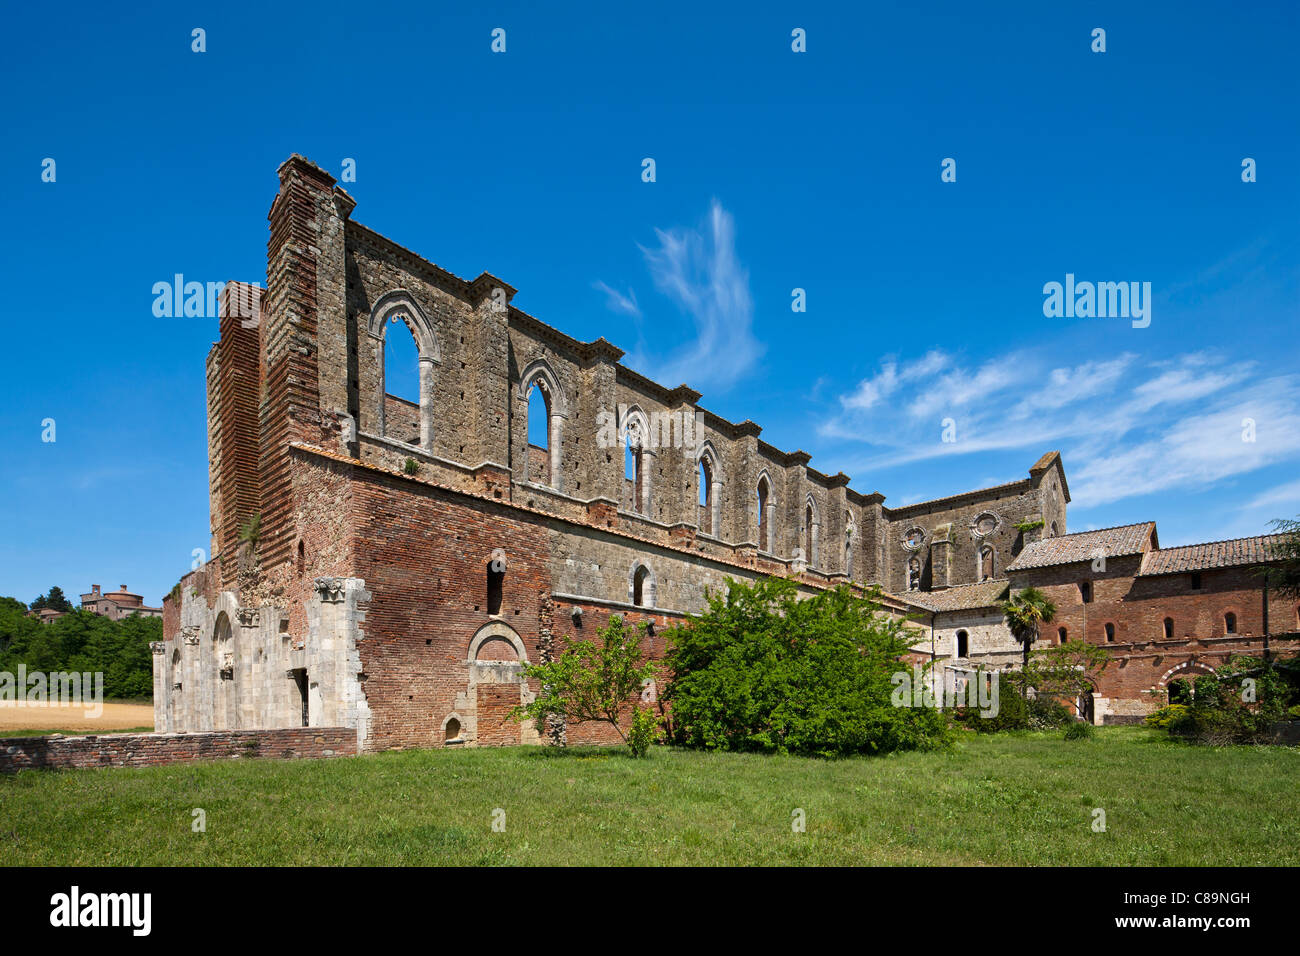 Italy, Tuscany, View of Abbazia San Galgano ruins Stock Photo